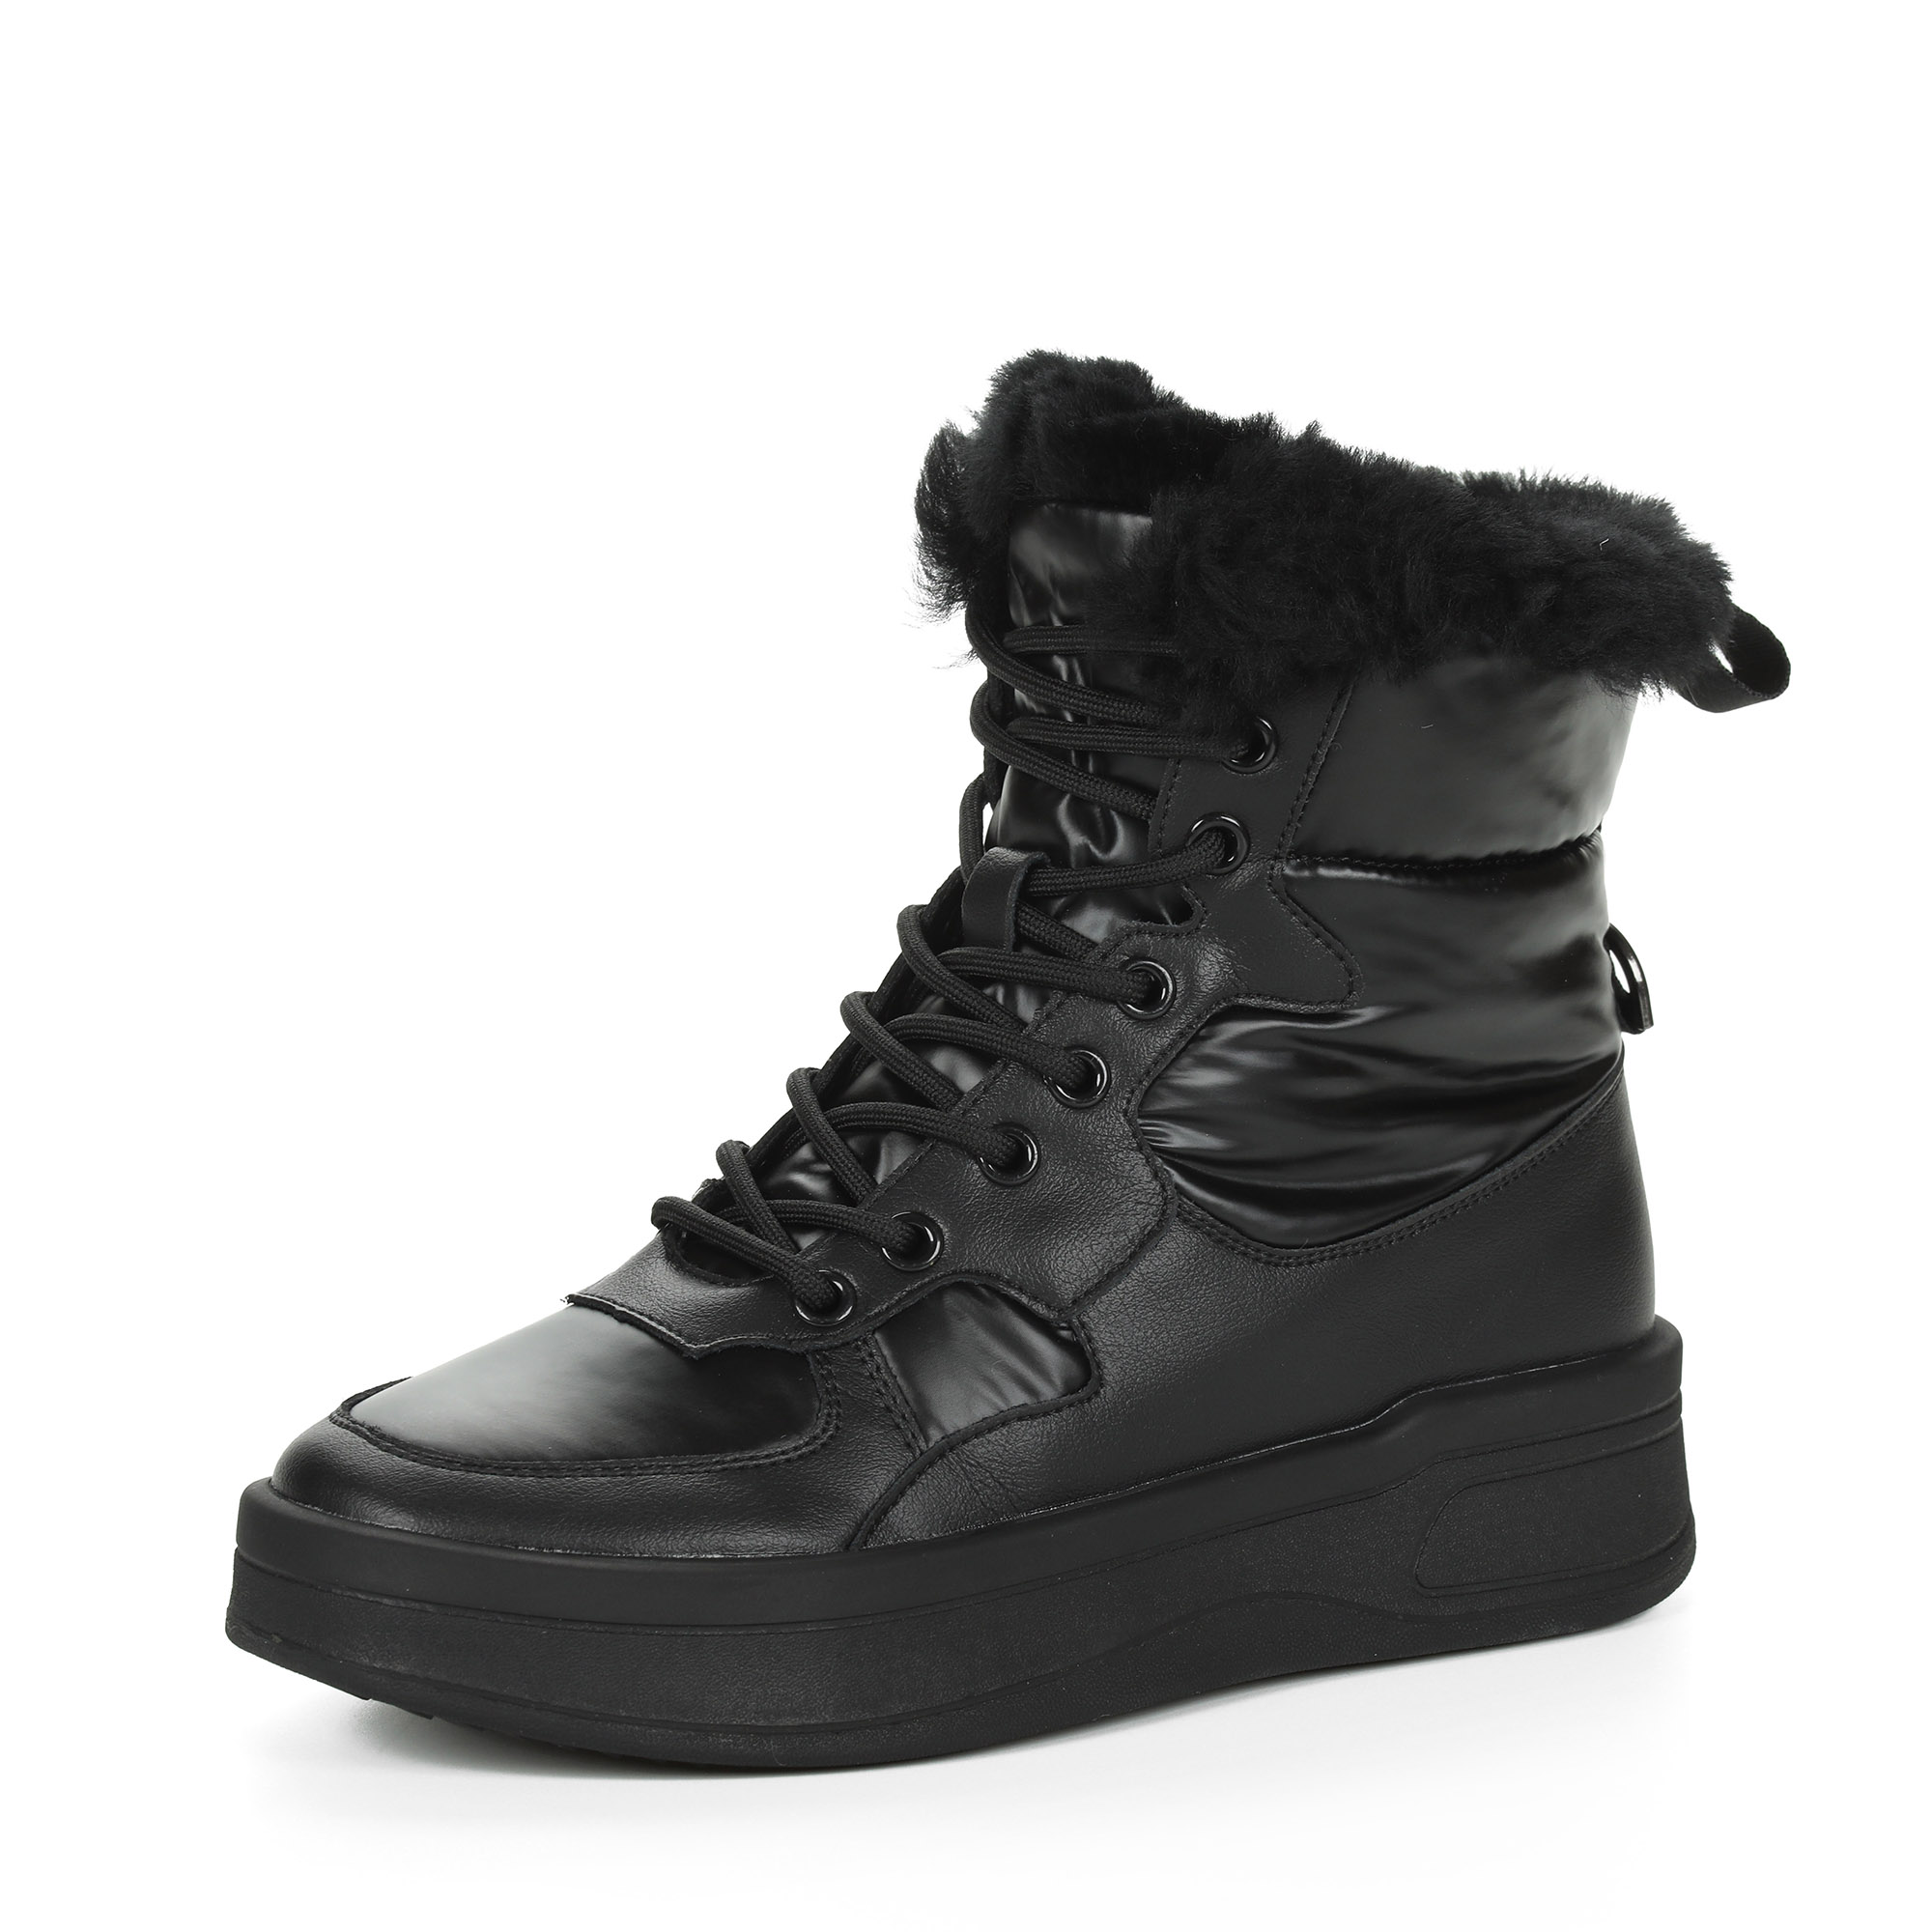 Черные высокие кроссовки из комбинированных материалов смеховой опушкой на подкладке из натуральной шерсти на утолщенной платформе Respect, размер 36, цвет черный - фото 3